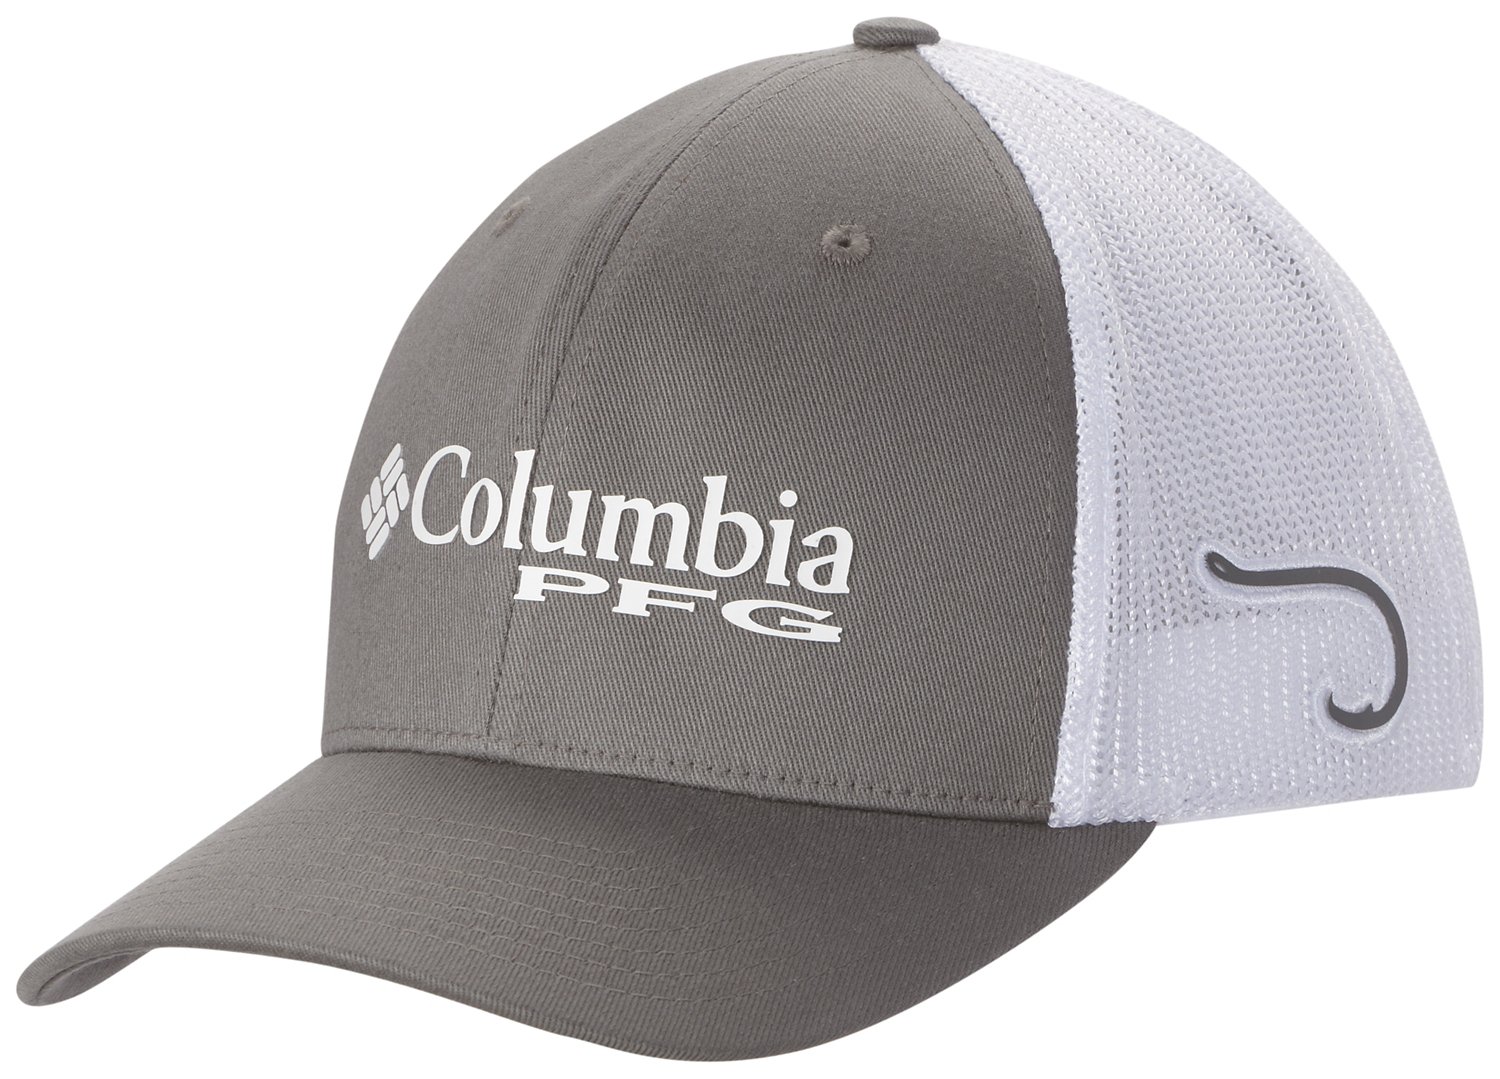 Columbia Men's LSU Tigers Mesh Fishing Ball Cap